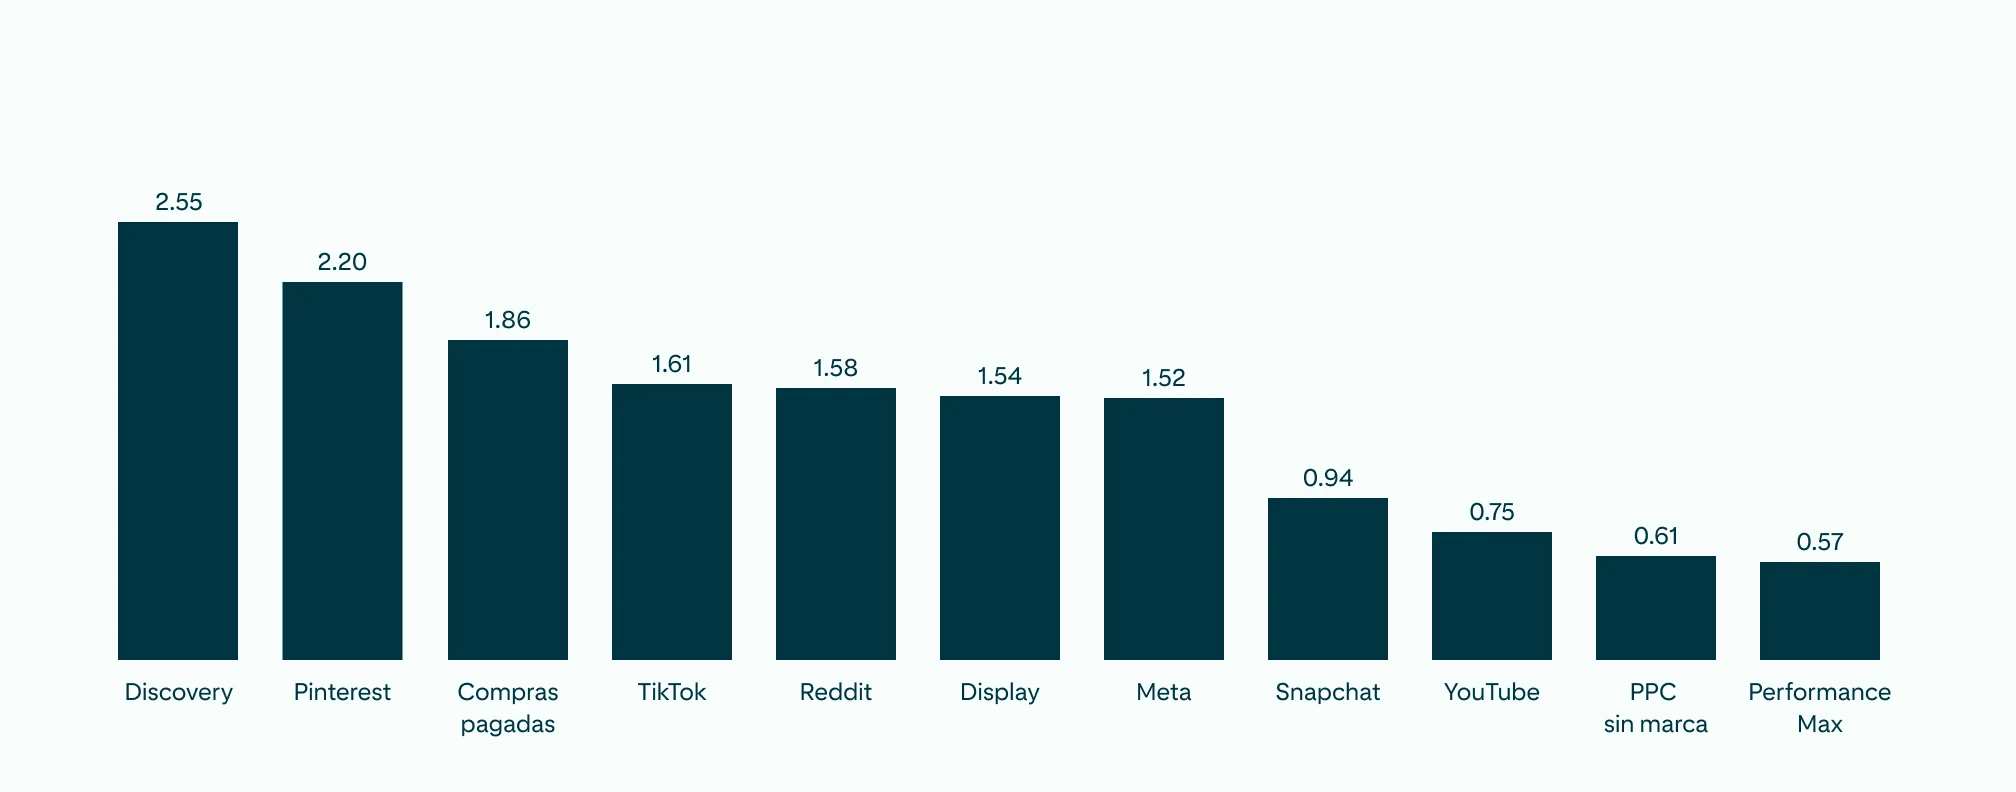    Gráfico de barras que muestra el ROAS en todos los canales de medios sociales en los que Pinterest se destaca sobre otras plataformas, solo ligeramente por detrás de Discovery.